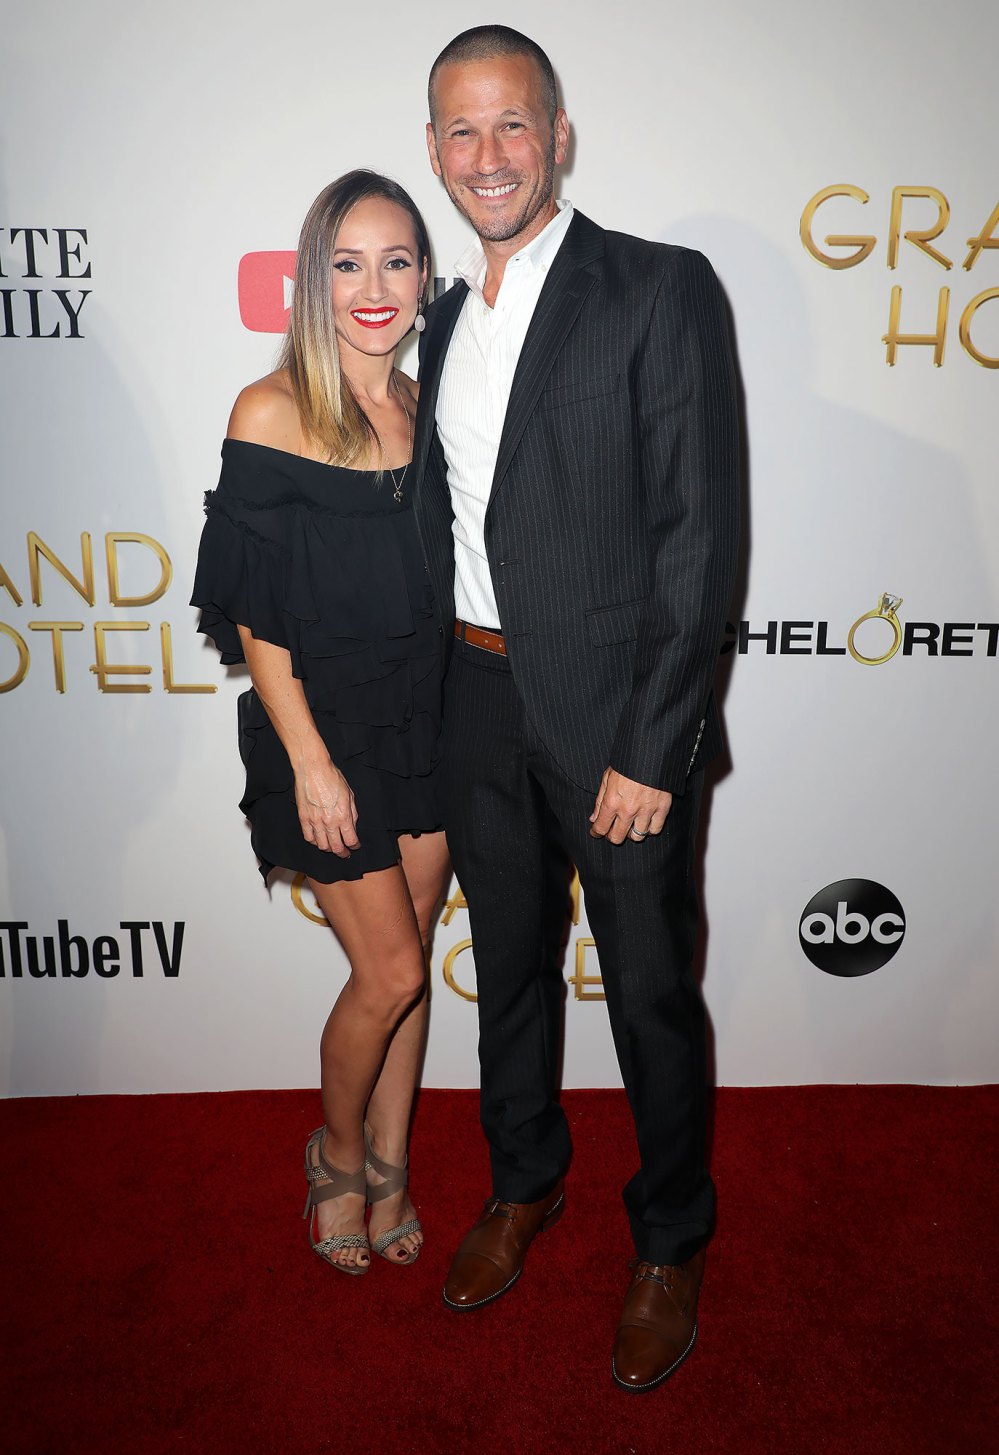 Bachelorette Ashley Hebert and Ex-Husband JP Rosenbaum Reunite for Luke Bryan Concert